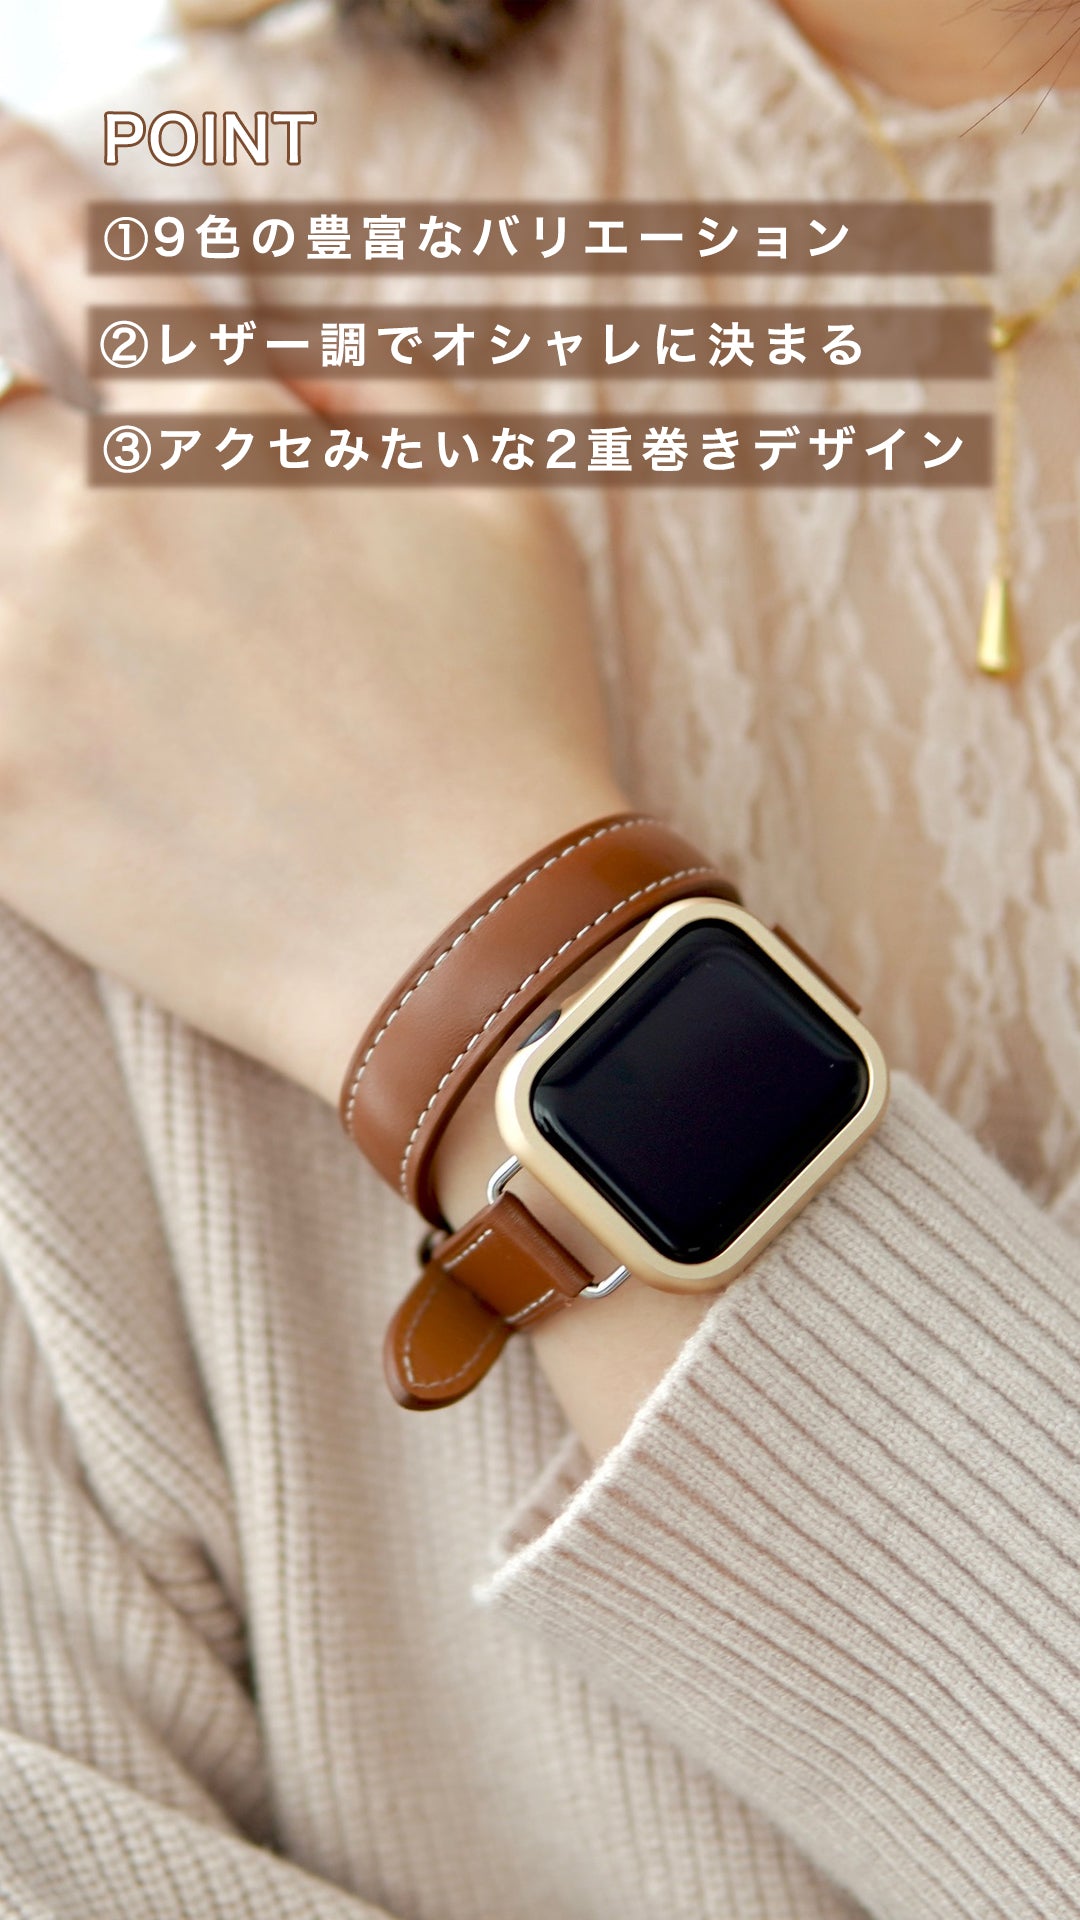 Apple Watch 二重巻きストラップ